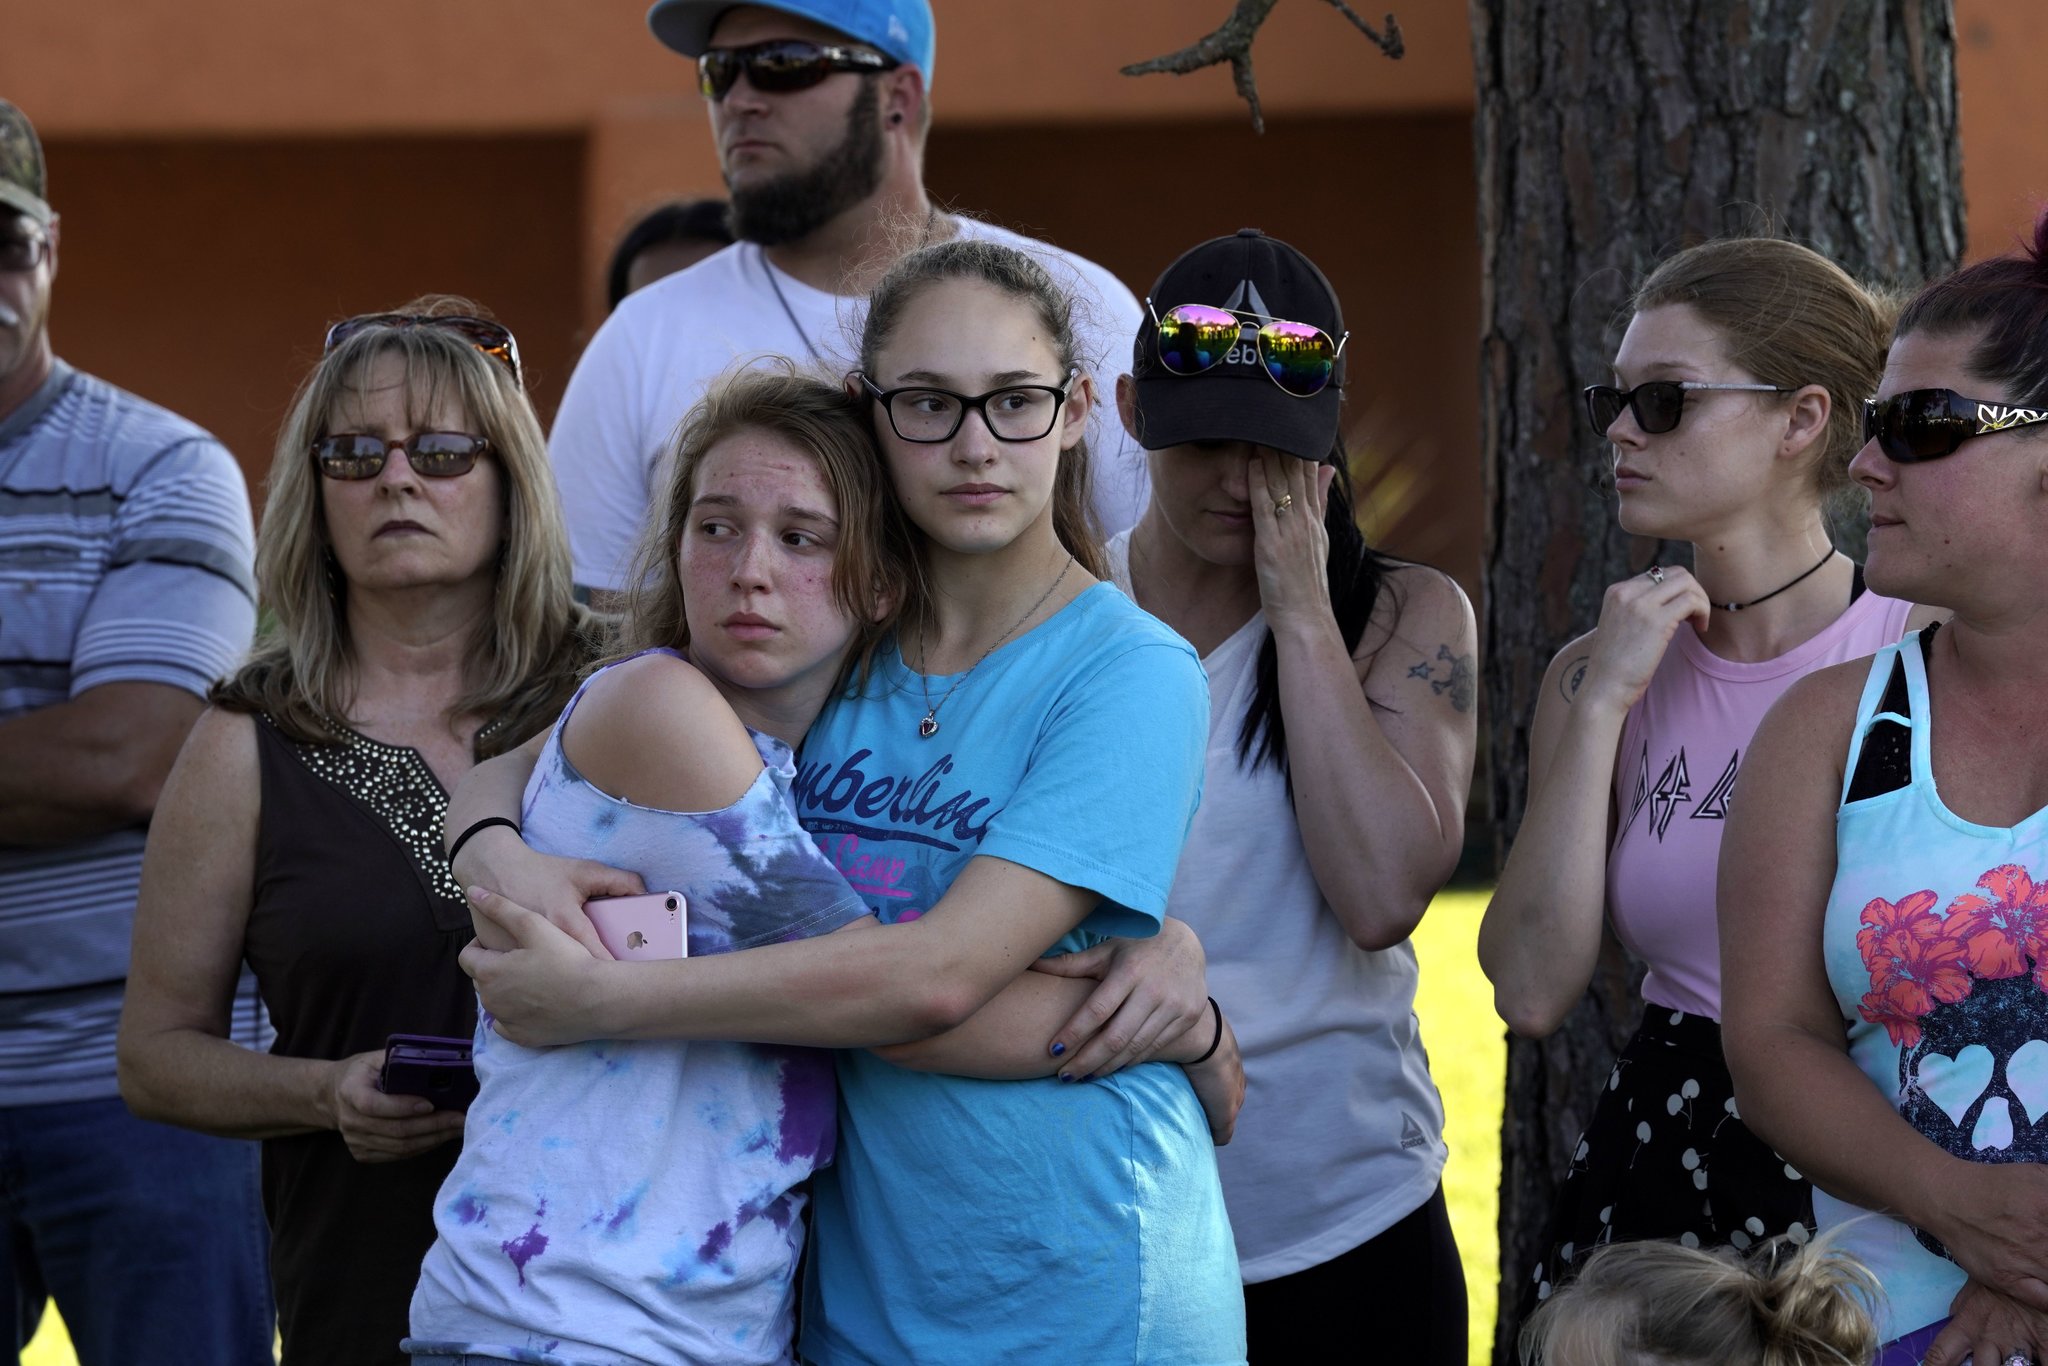 Strage scuola Texas: in un video il killer entra nell’edificio e apre il fuoco, si aggiorna il totale delle vittime che sale a 19 bambini